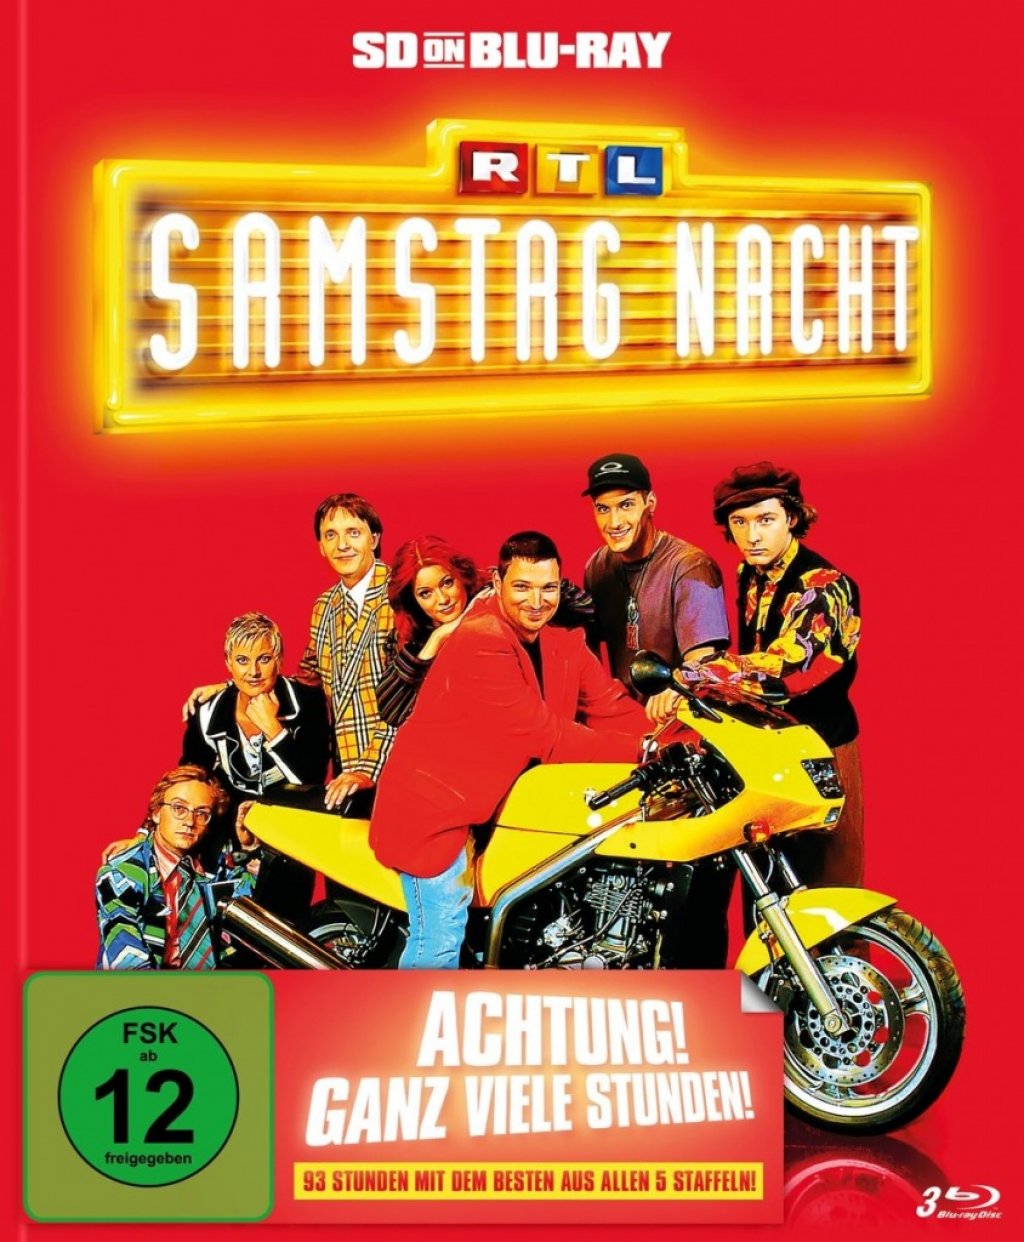 RTL Samstag Nacht - Das Beste aus allen fünf Staffeln / SD on Blu-ray